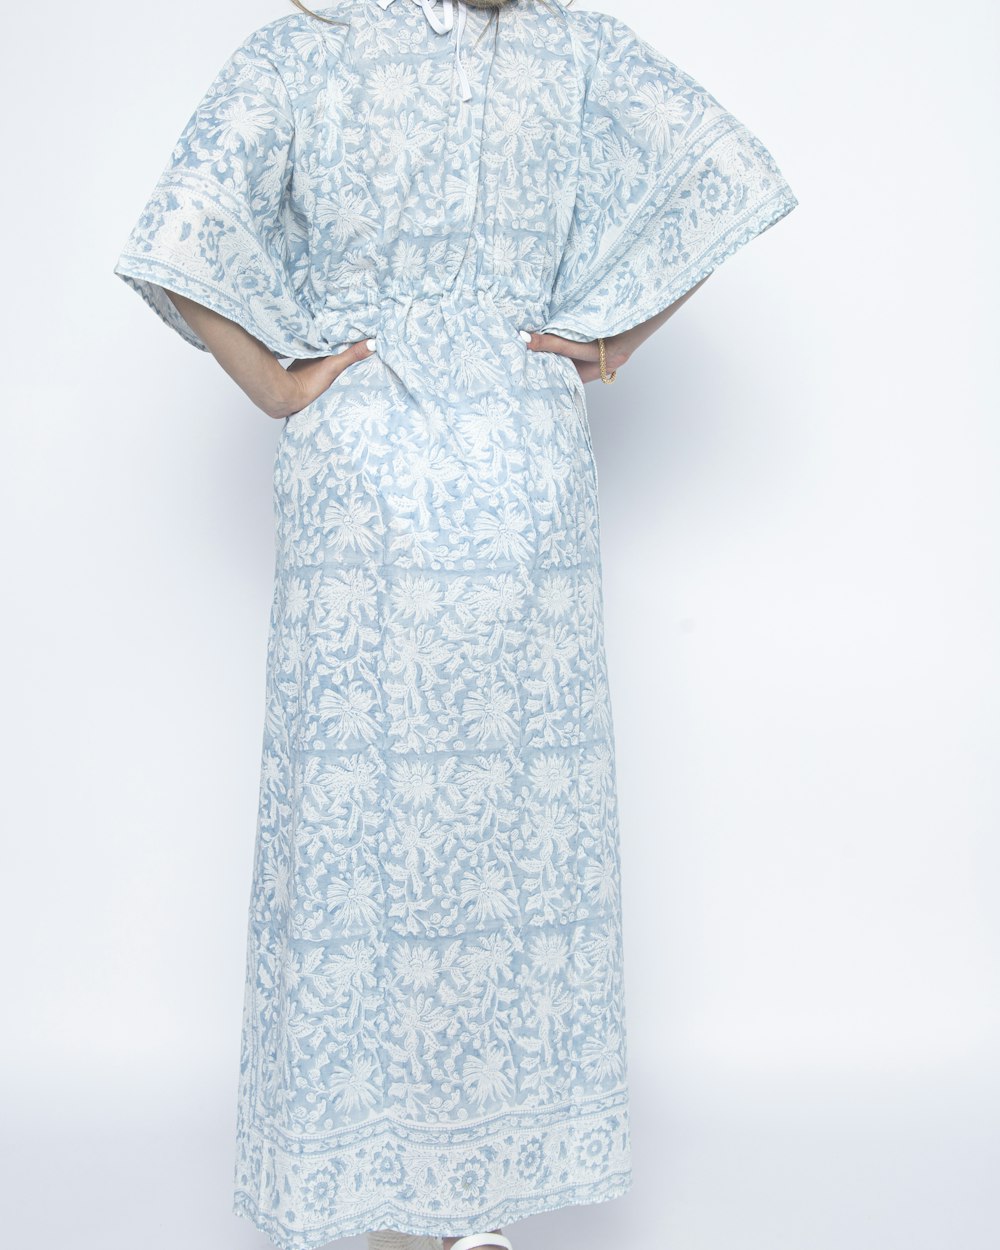 eine Frau in einem blau-weißen Kleid